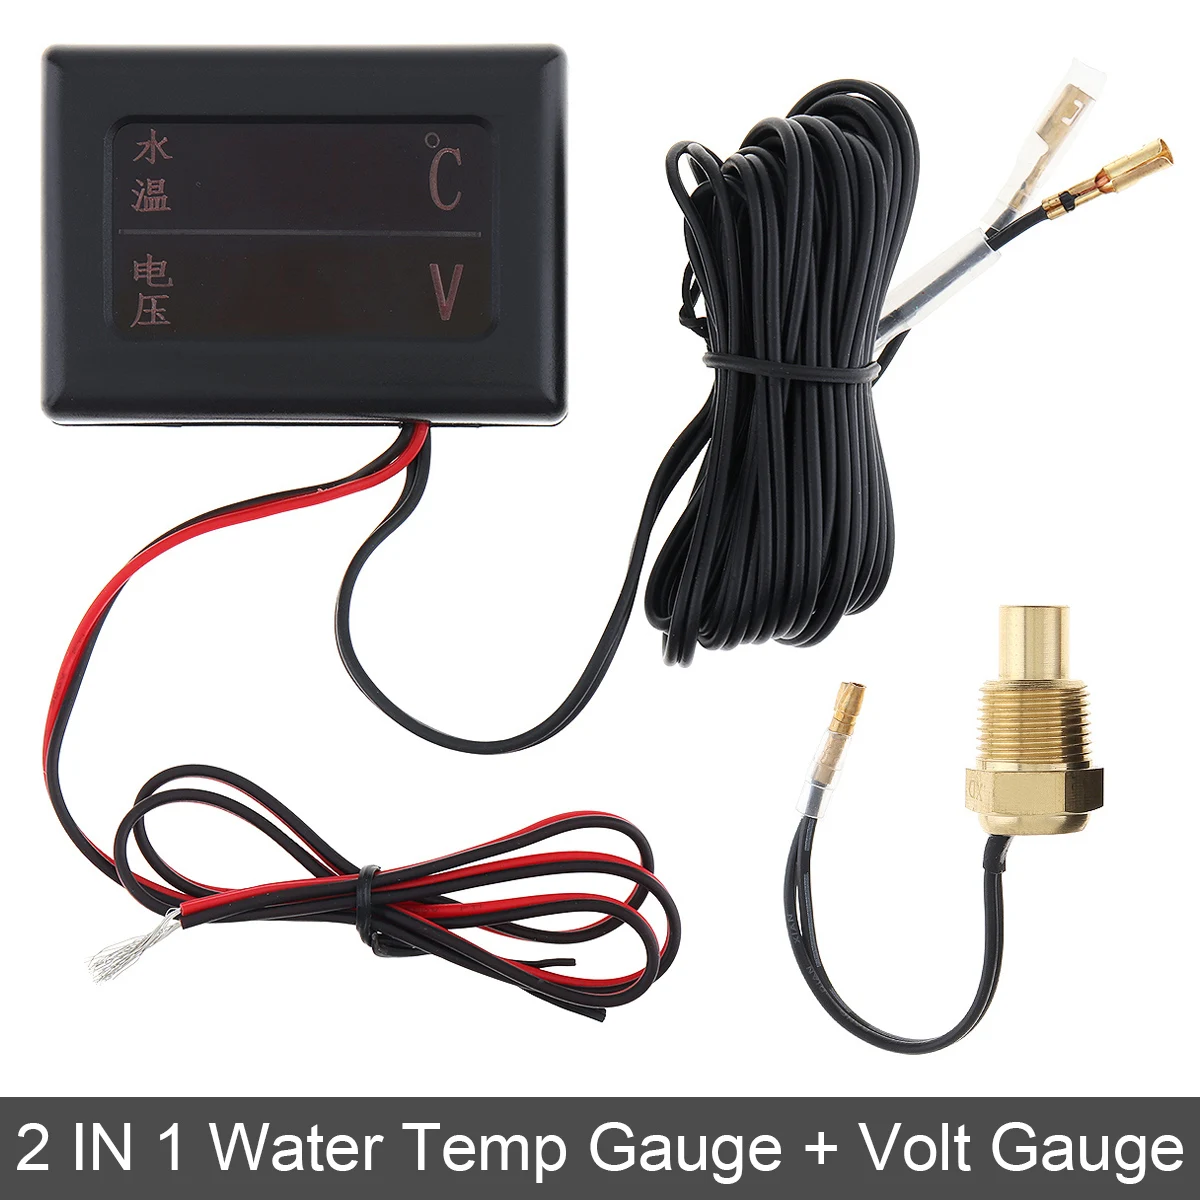 

12V / 24 V Universal 2 In 1 Car Gauge Digital Anti Shake Water Temperature Gauge +Volt Gauge with Sensor for Car Truck Motorycle